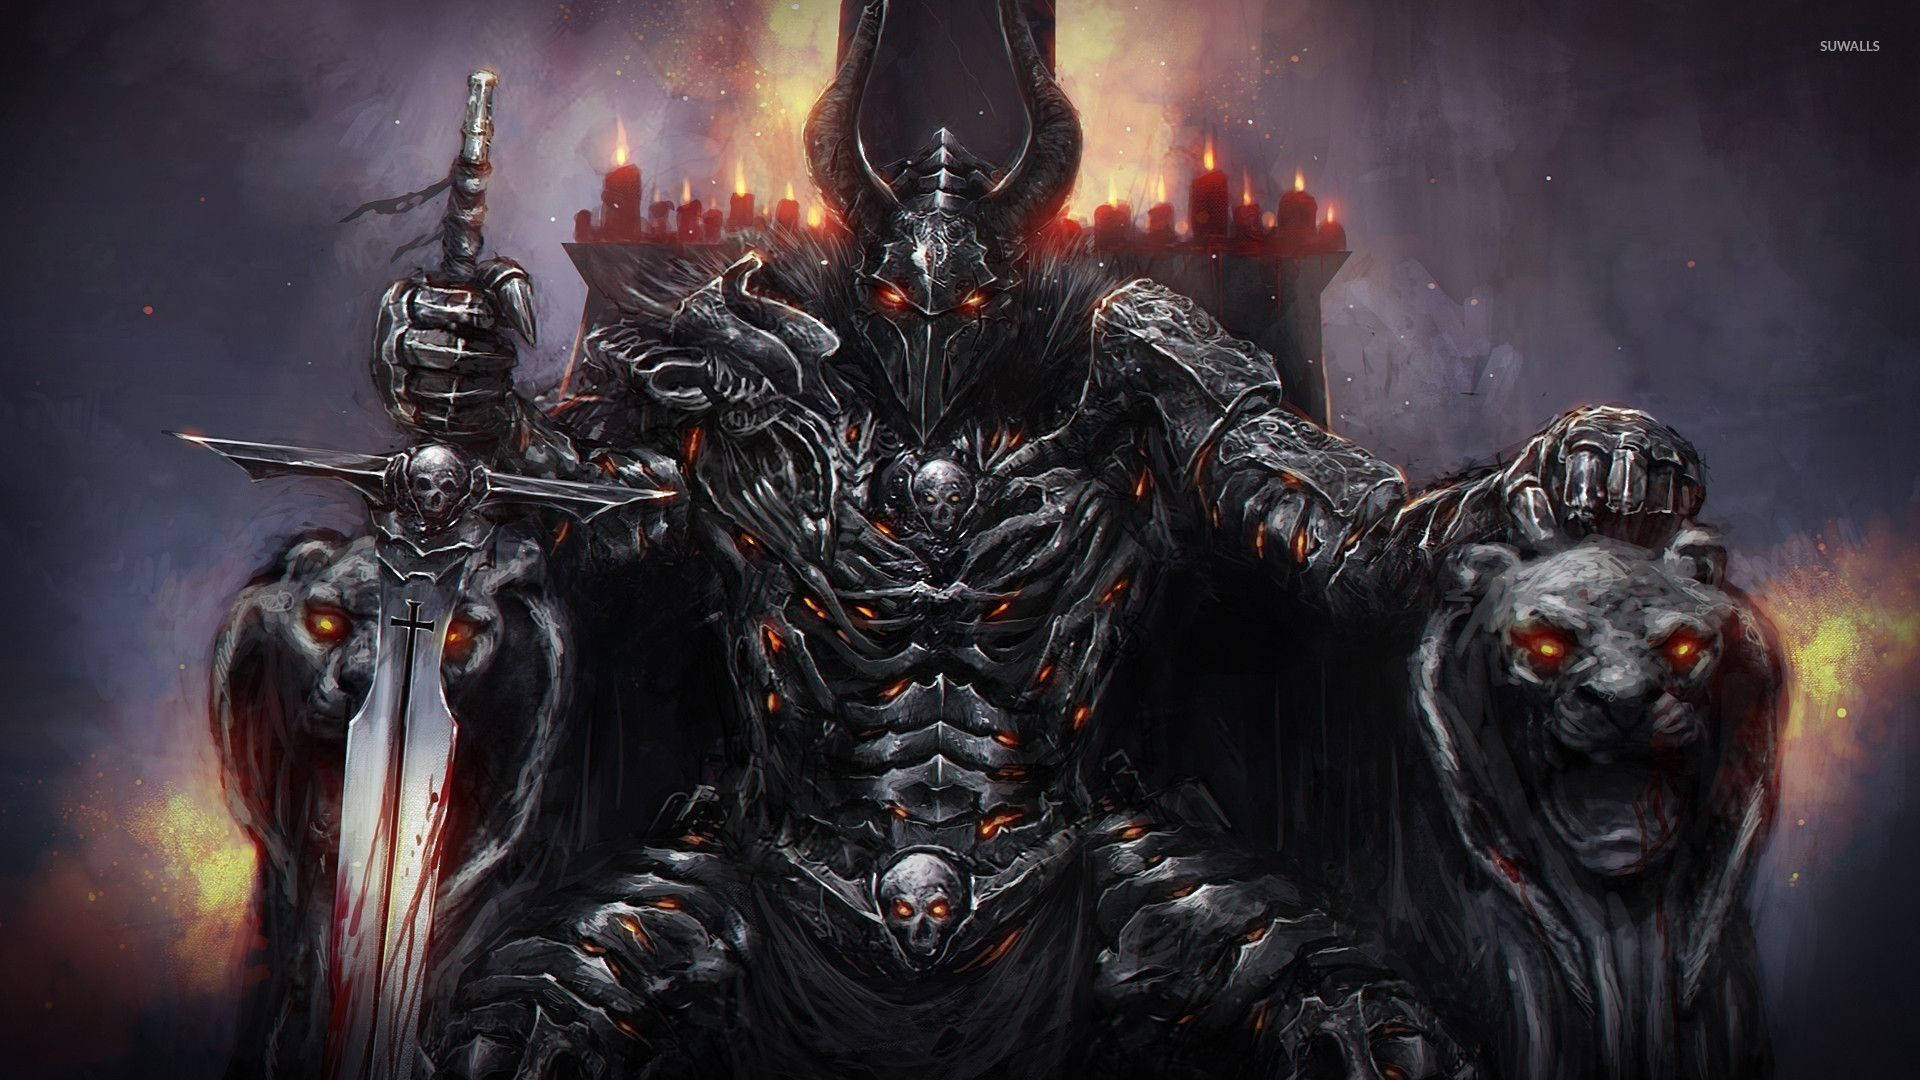 The Dark Knight Demon King Background